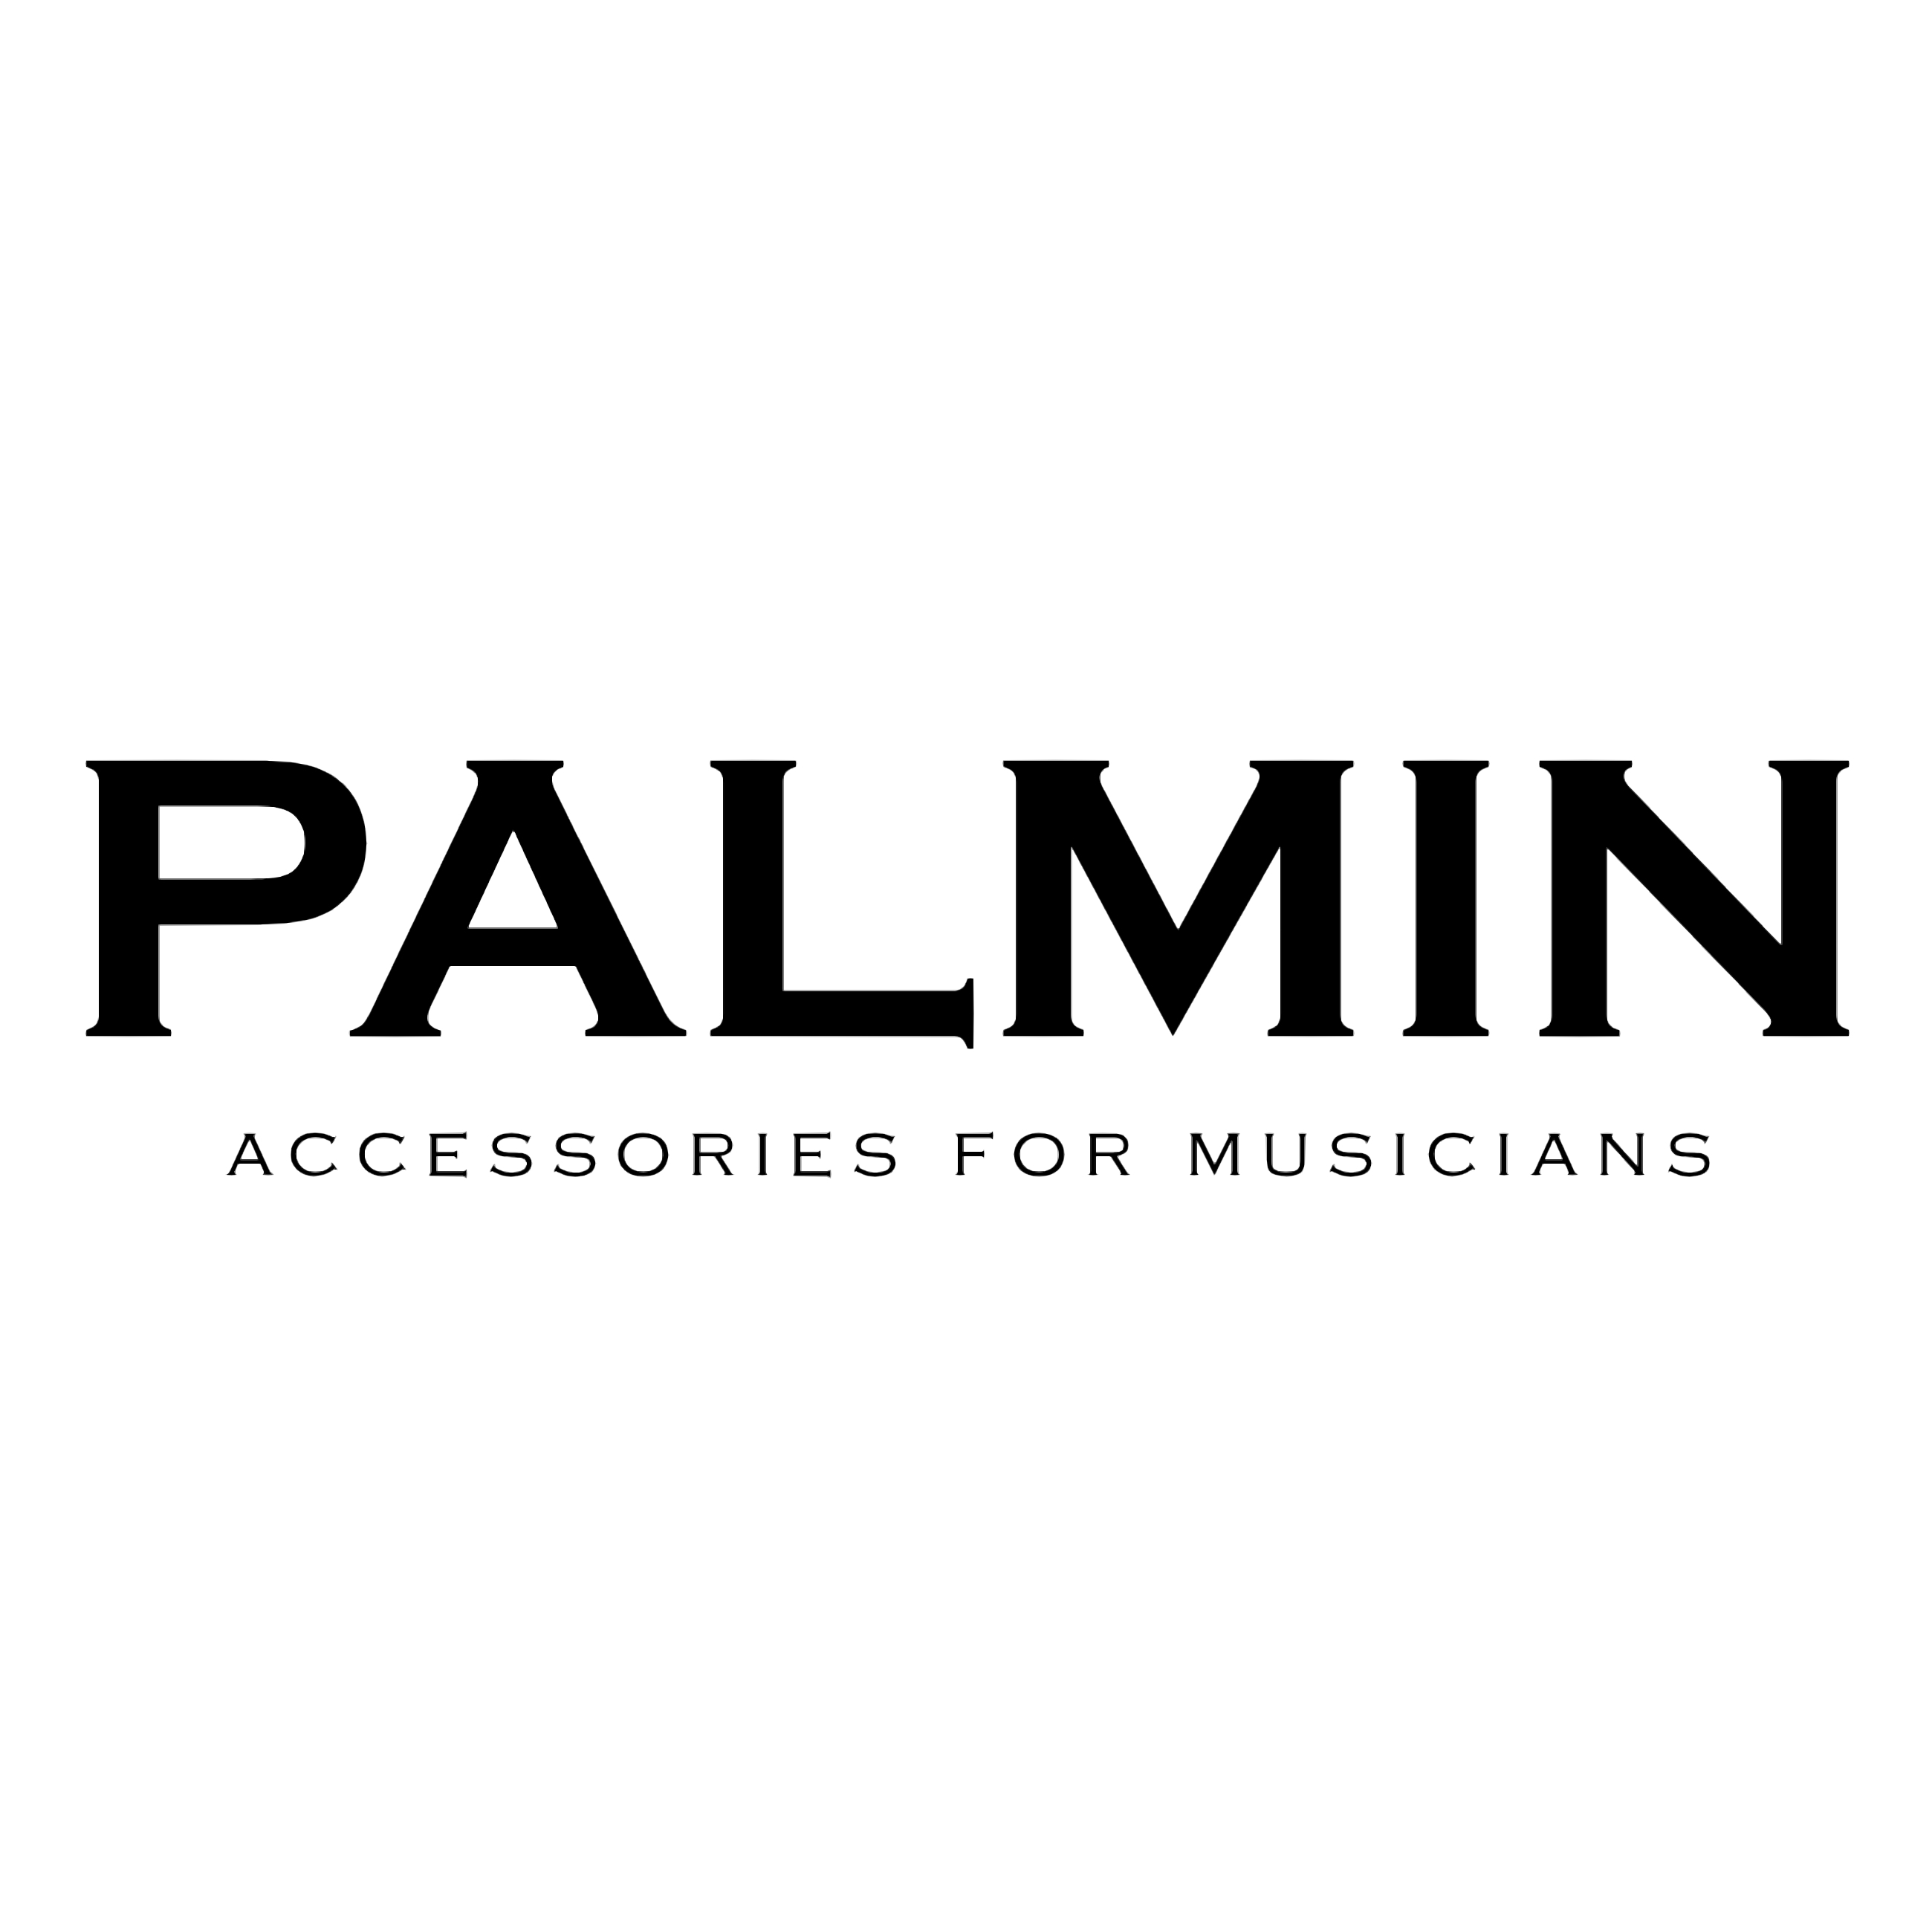 Palmin в России - магазин, новости, обзоры, интервью, видео, фото, обсуждение.